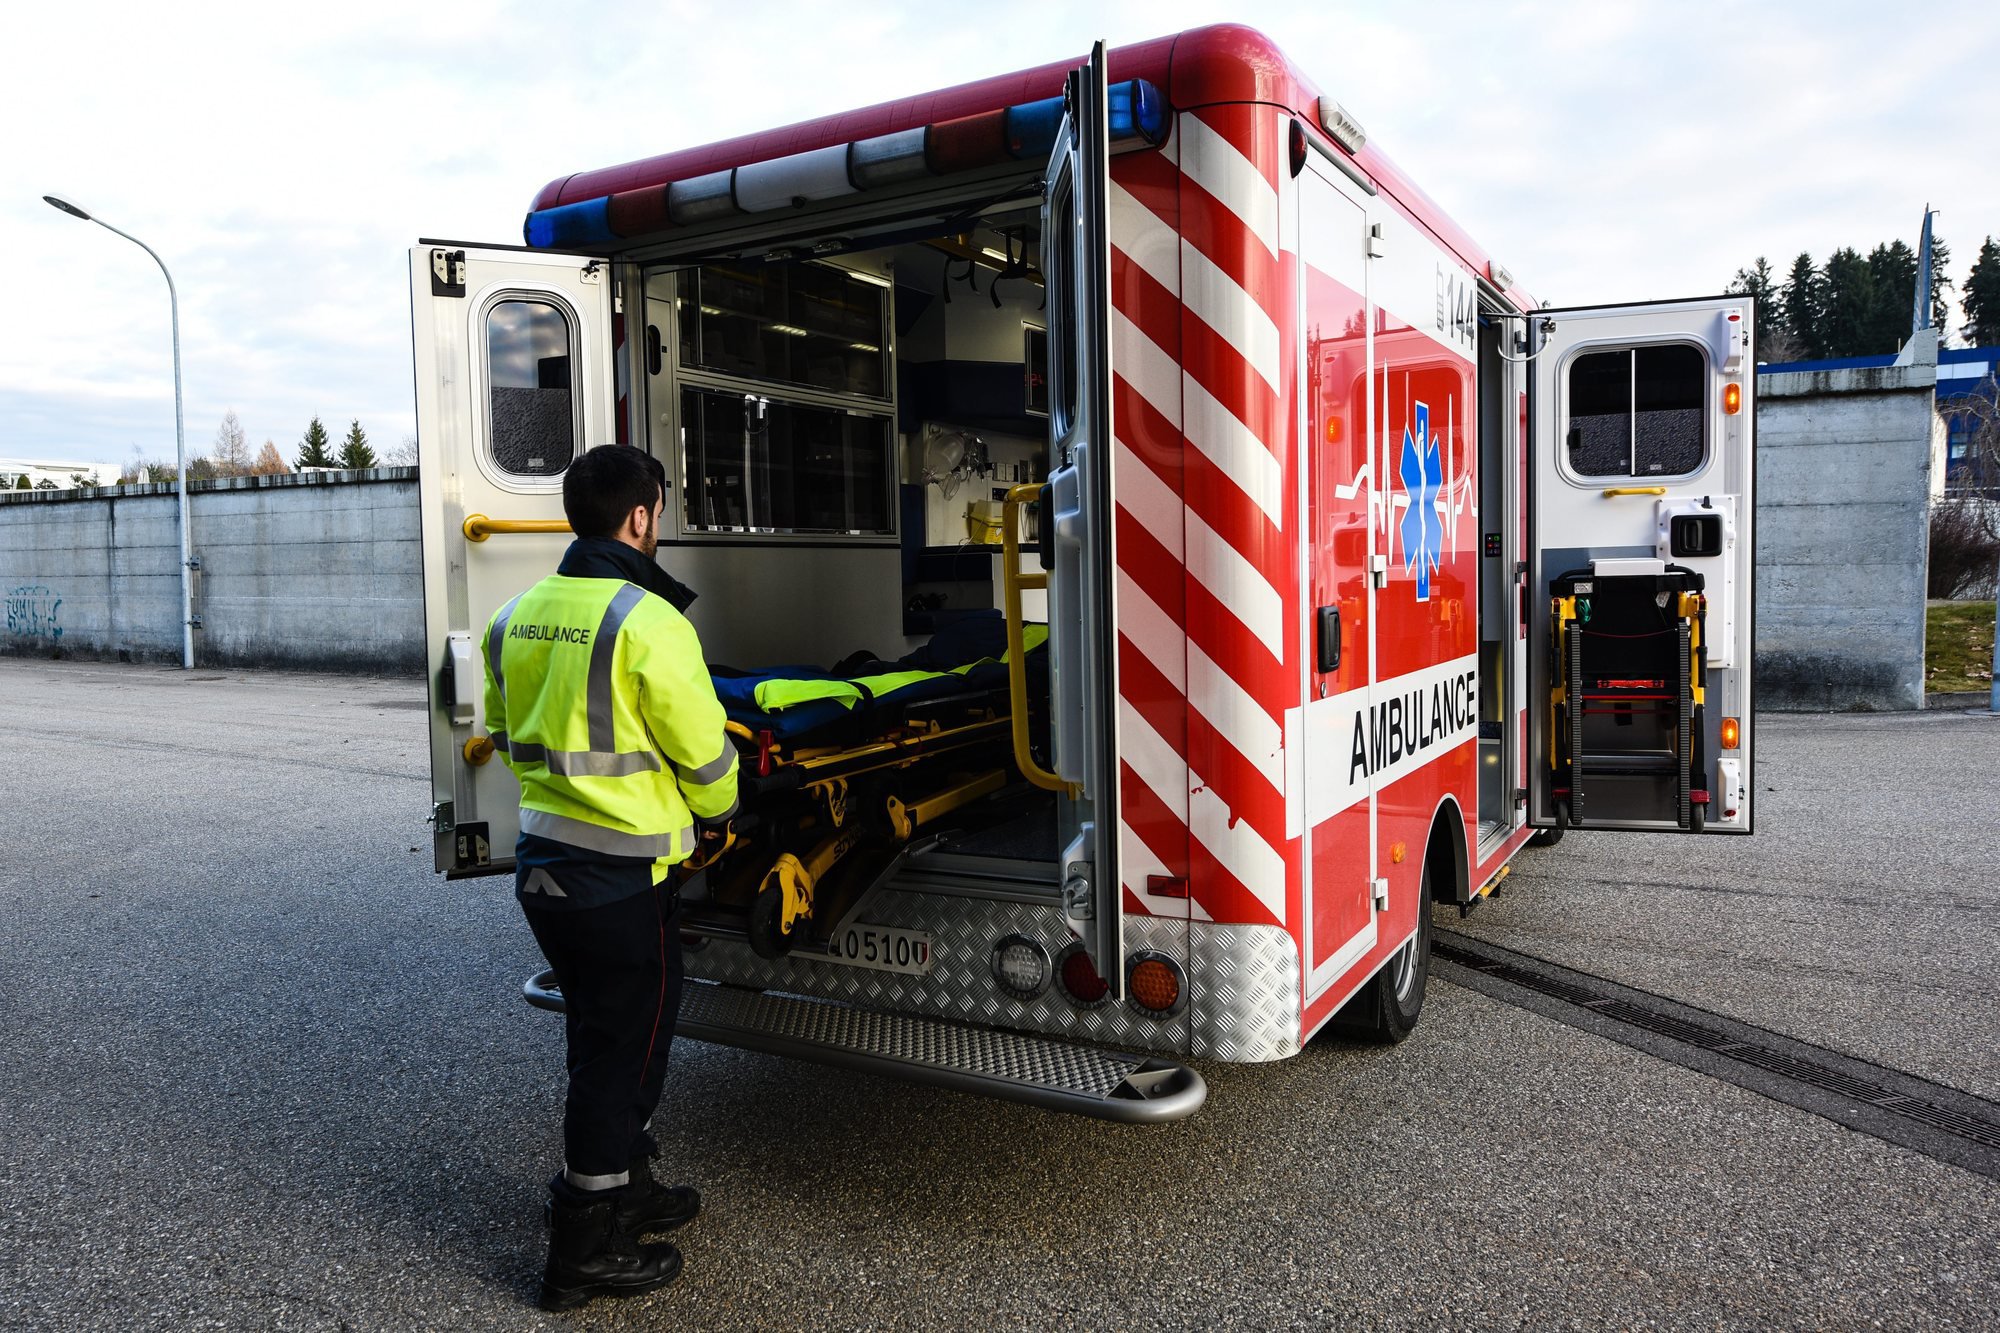 Lors d'une intervention, l'équipage de l'ambulance peut accepter une demande du patient d'être emmené à l'hôpital de son choix.